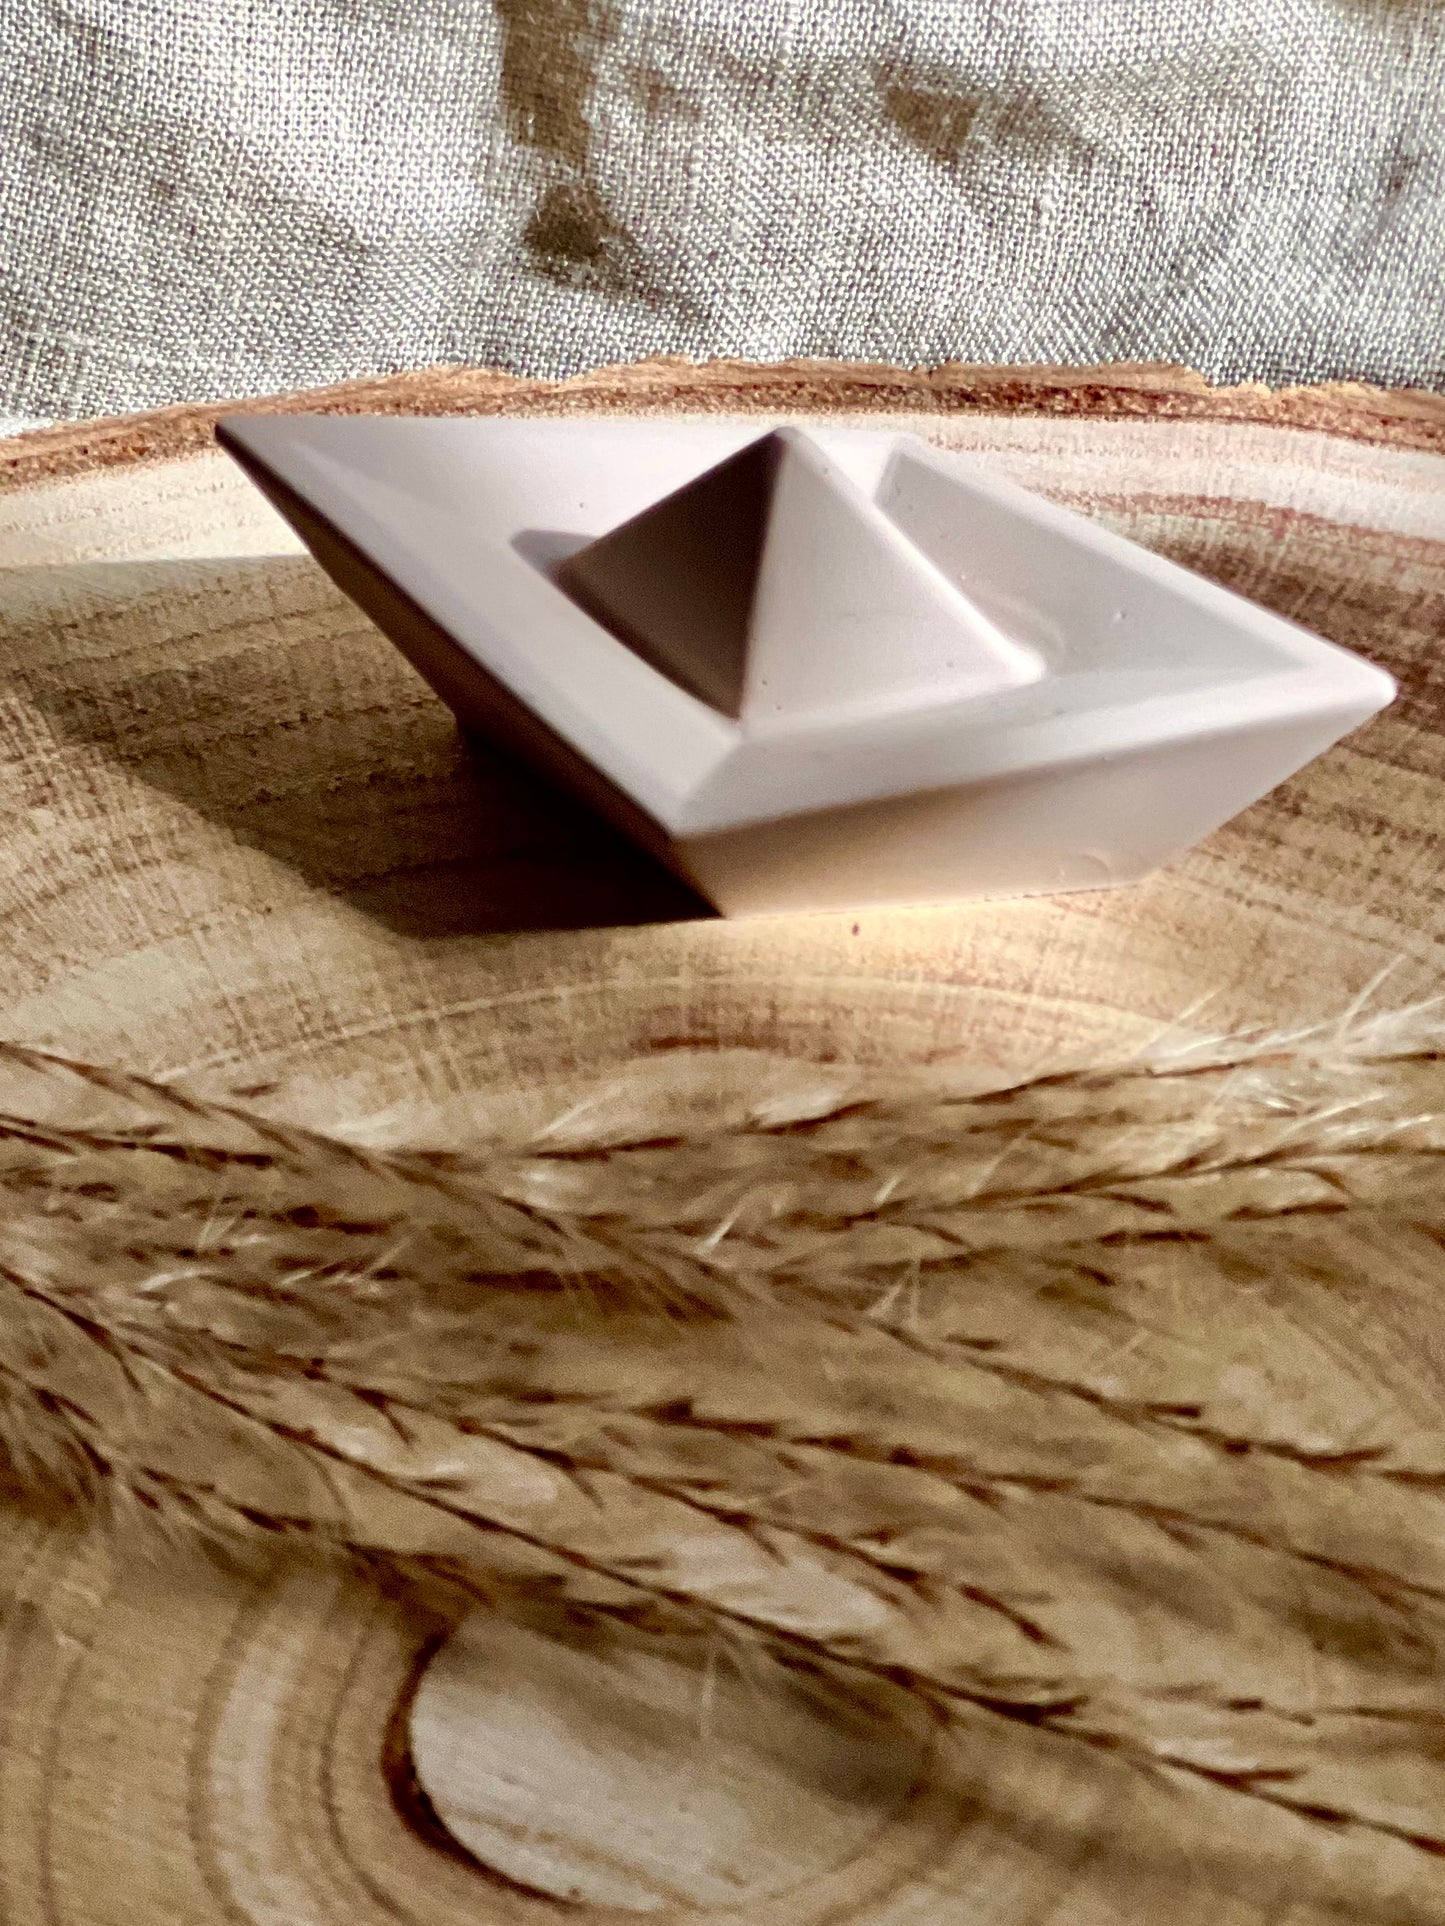 Origami paper boat ornament